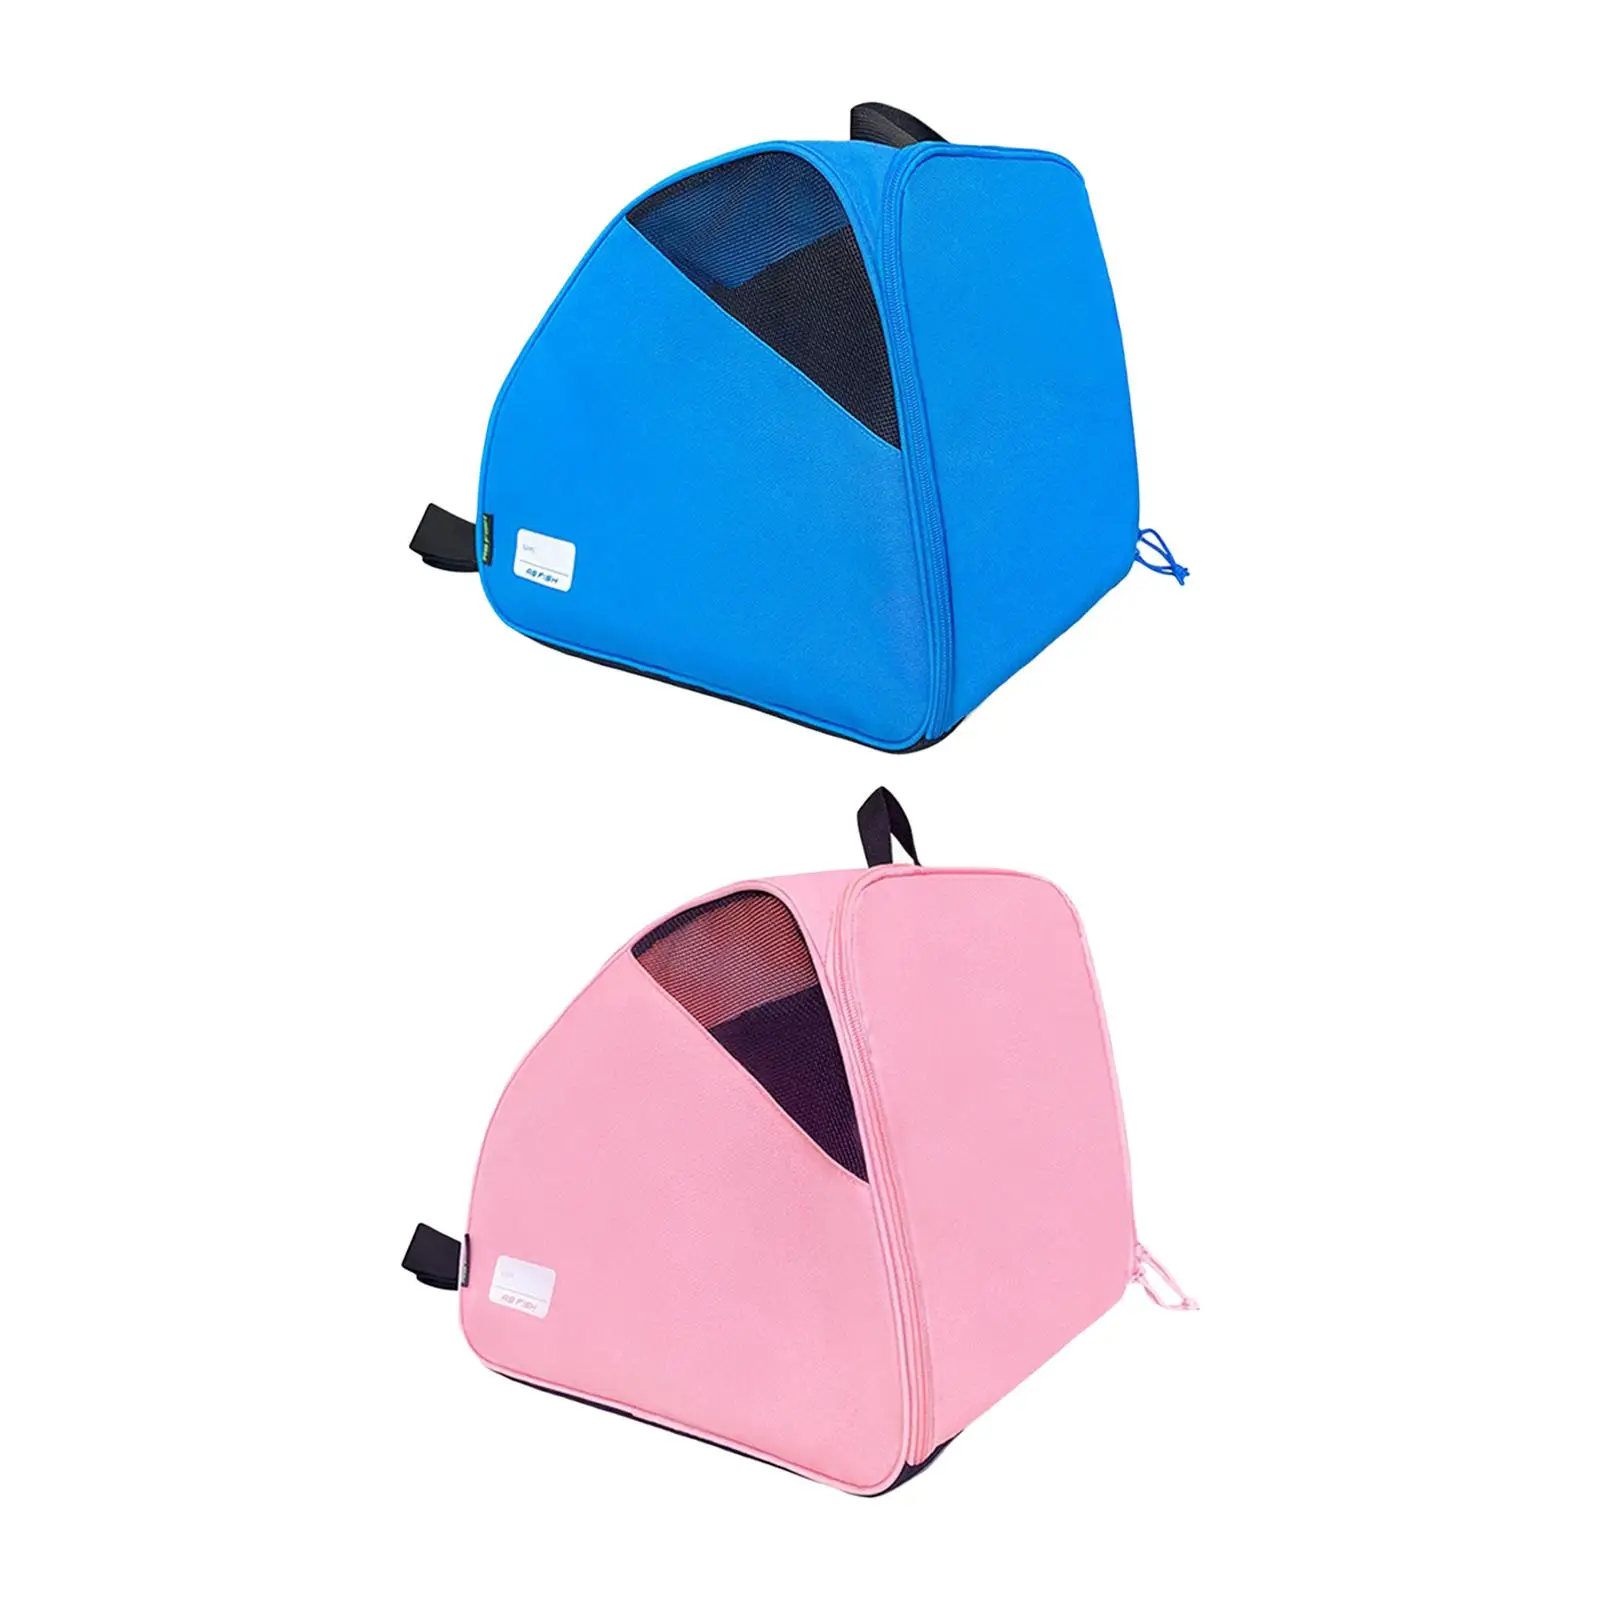 Roller Skate Bag Skating Shoes Storage Bag with Adjustable Shoulder Strap Waterproof Ice Skate Carrier Bag for Ice Skates